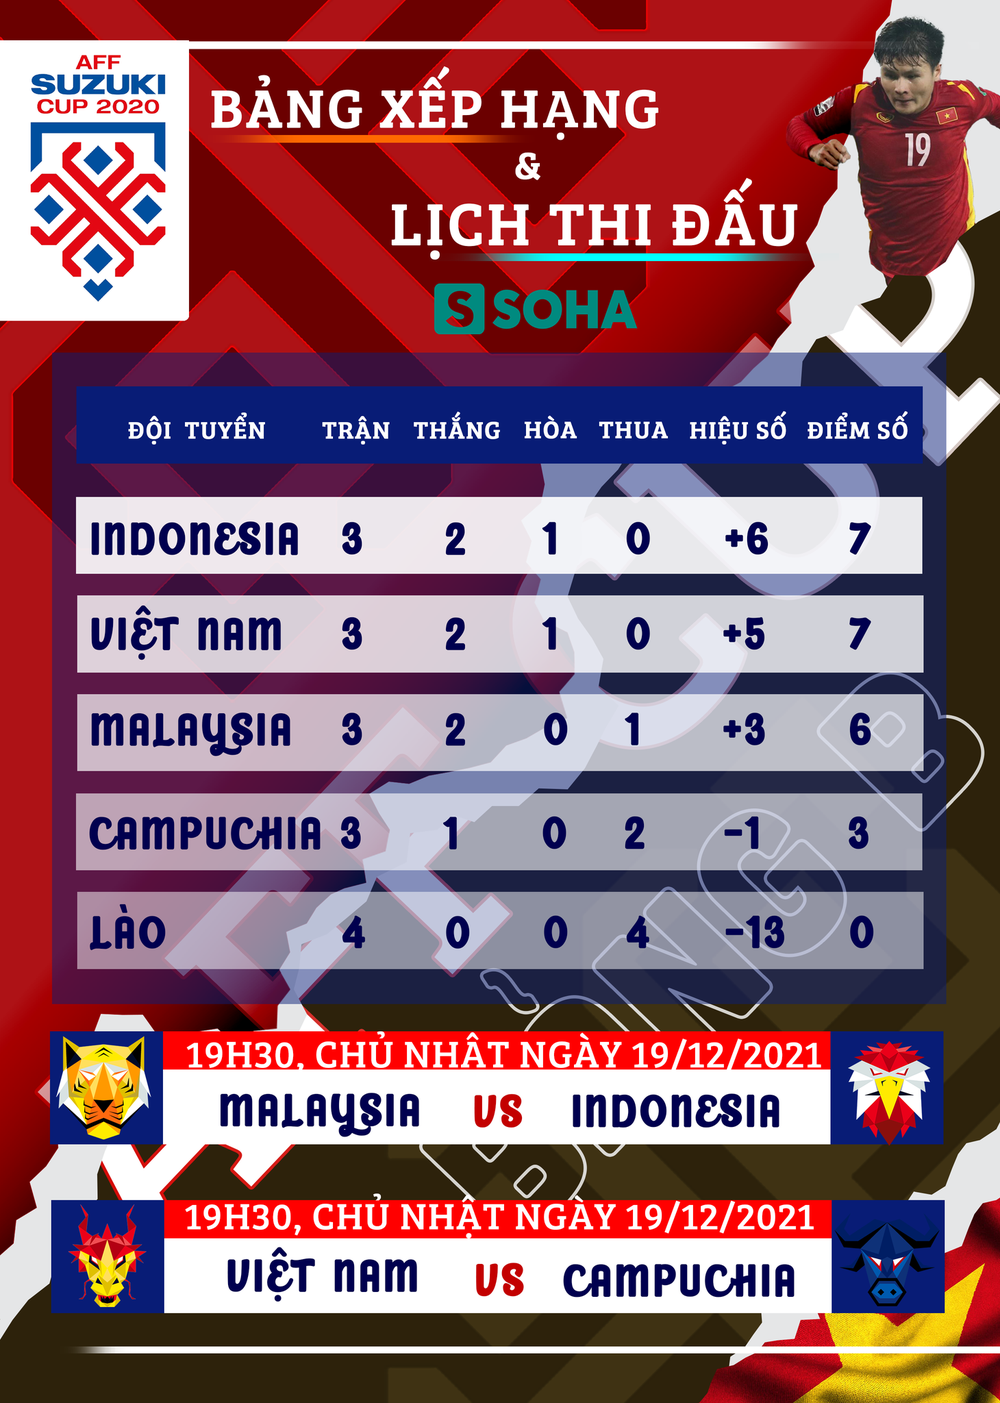 Trước trận quyết định, sao Thái Lan gửi “lời thách đấu” gián tiếp tới tuyển Việt Nam - Ảnh 2.